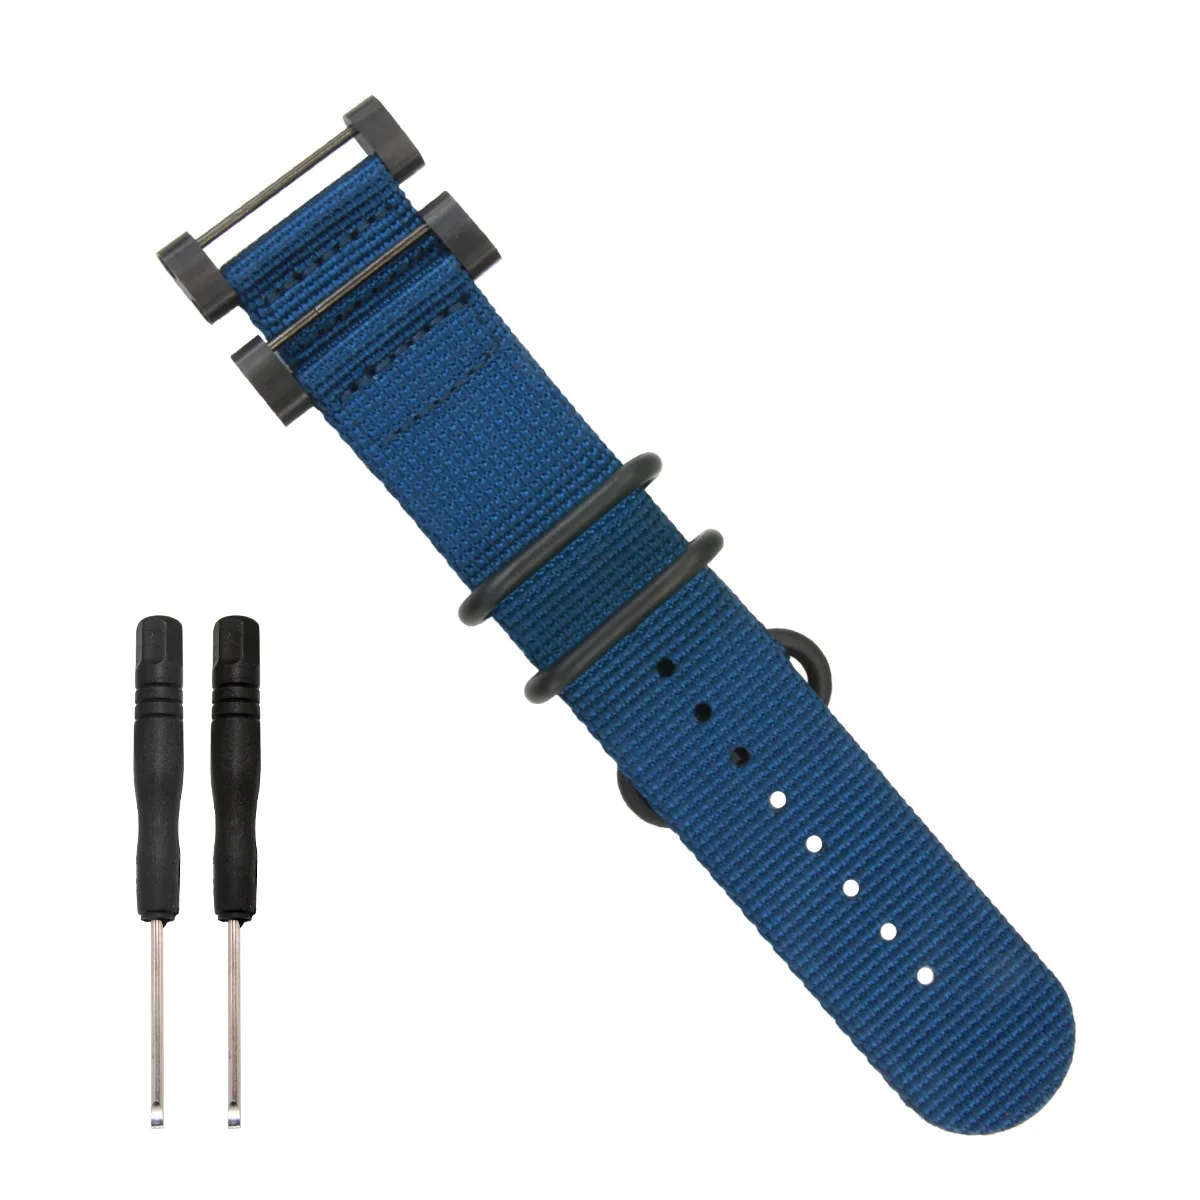 Новая распродажа для nato long Suunto Core нейлоновый ремешок набор музыкальных инструментов w Lugs адаптеры 24 мм Zulu Ремешки для наручных часов нейлоновый умный браслет для мужчин